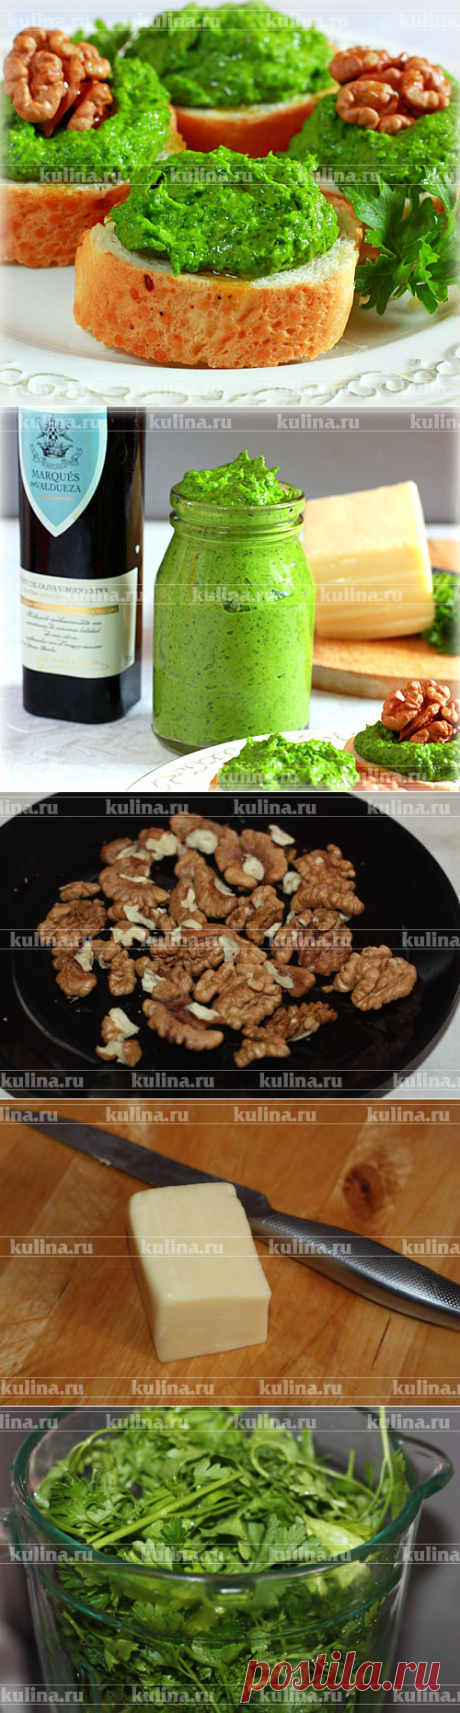 Песто из петрушки – рецепт приготовления с фото от Kulina.Ru